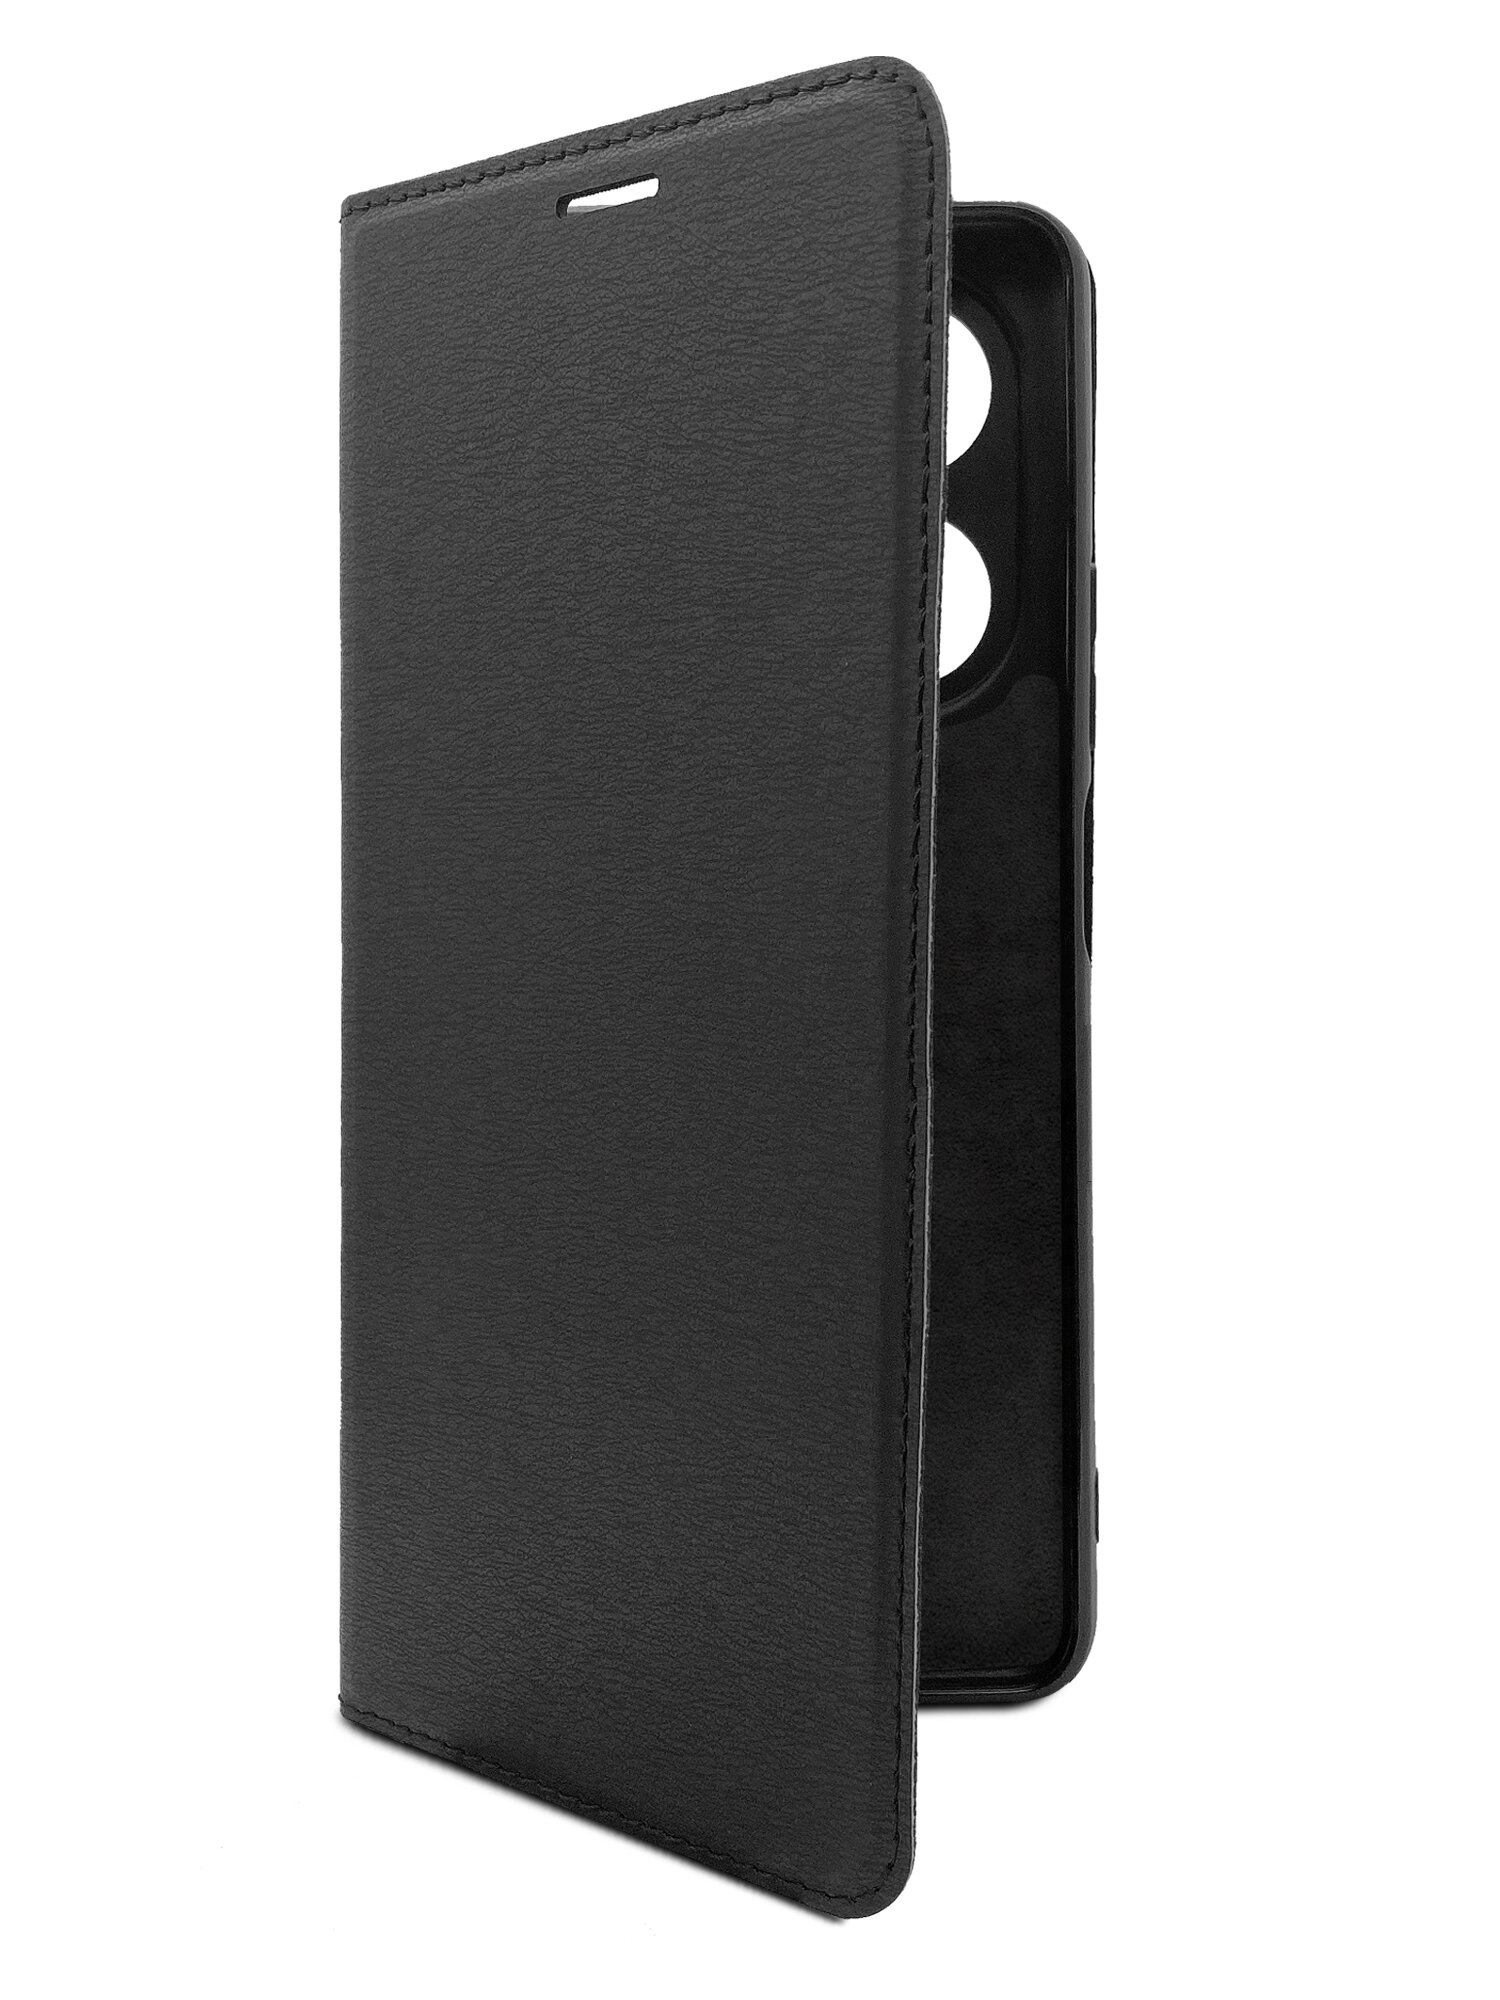 Чехол на Infinix HOT 40 Pro (Инфиникс Хот 40 Про) черный книжка эко-кожа с функцией подставки отделением для карт и магнитами Book case Brozo